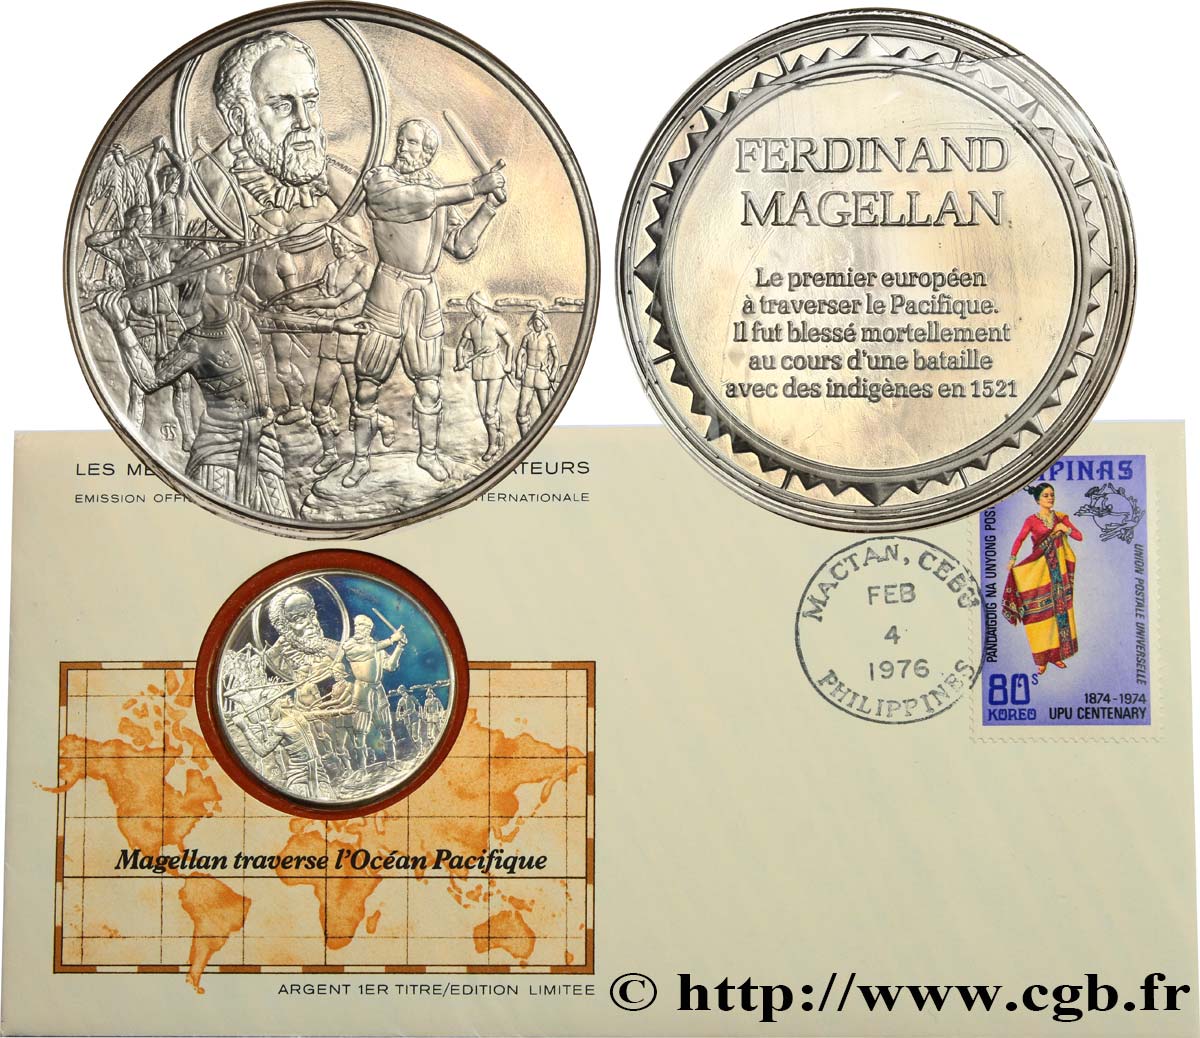 THE GREAT EXPLORERS  MEDALS Enveloppe “Timbre médaille”, Magellan traverse l’Océan Pacifique MS